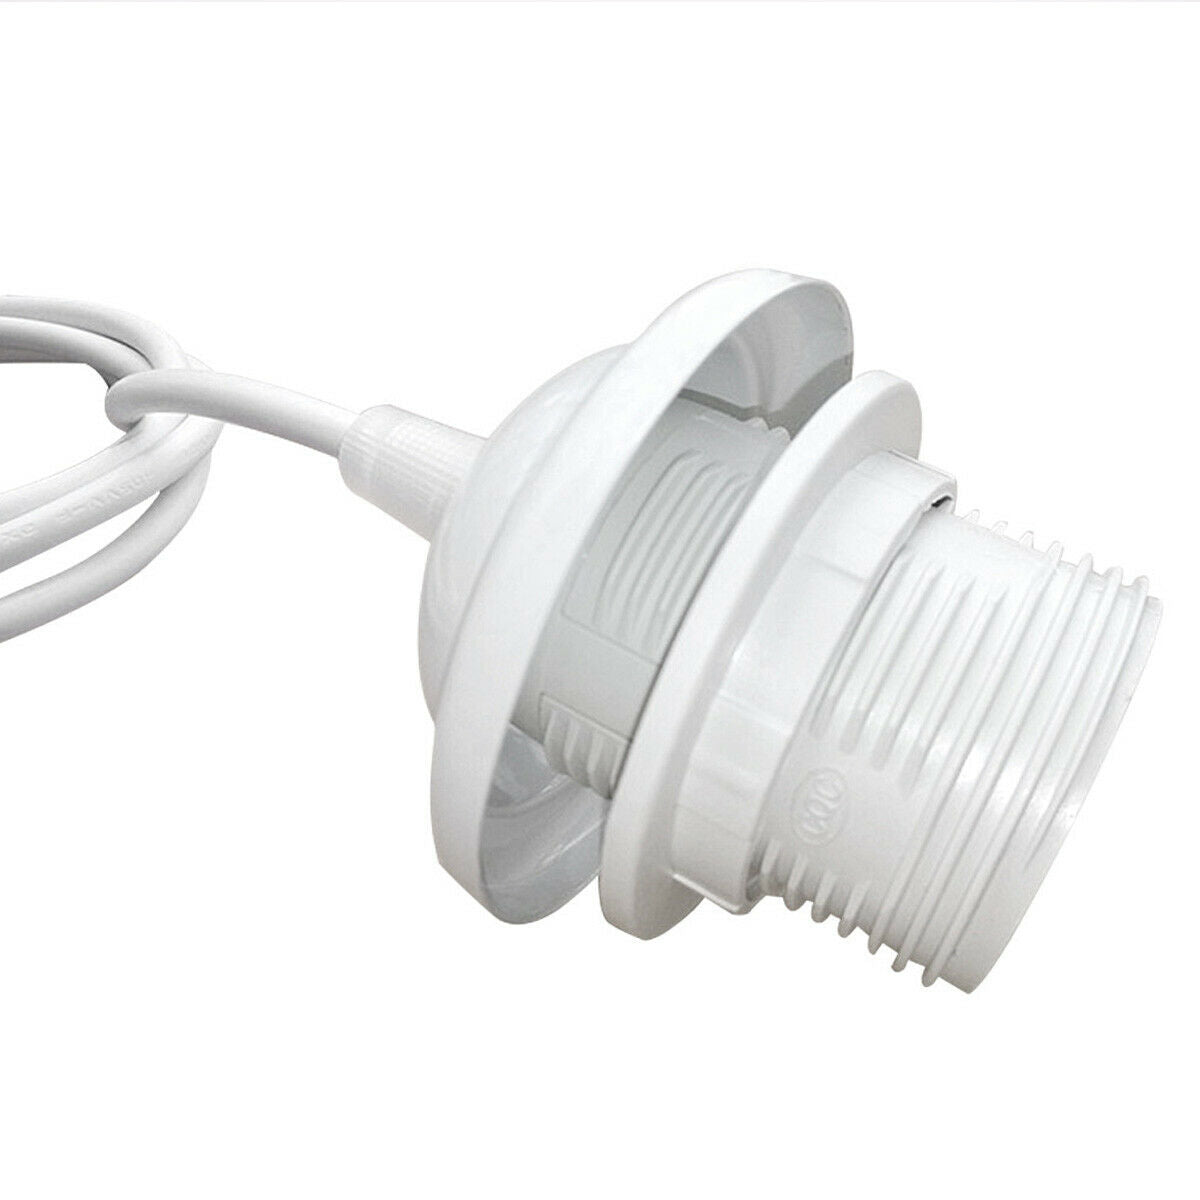 E27 Ceiling Rose White Light PVC Flex Pendant Lamp Holder Fitting~2378 - LEDSone UK Ltd